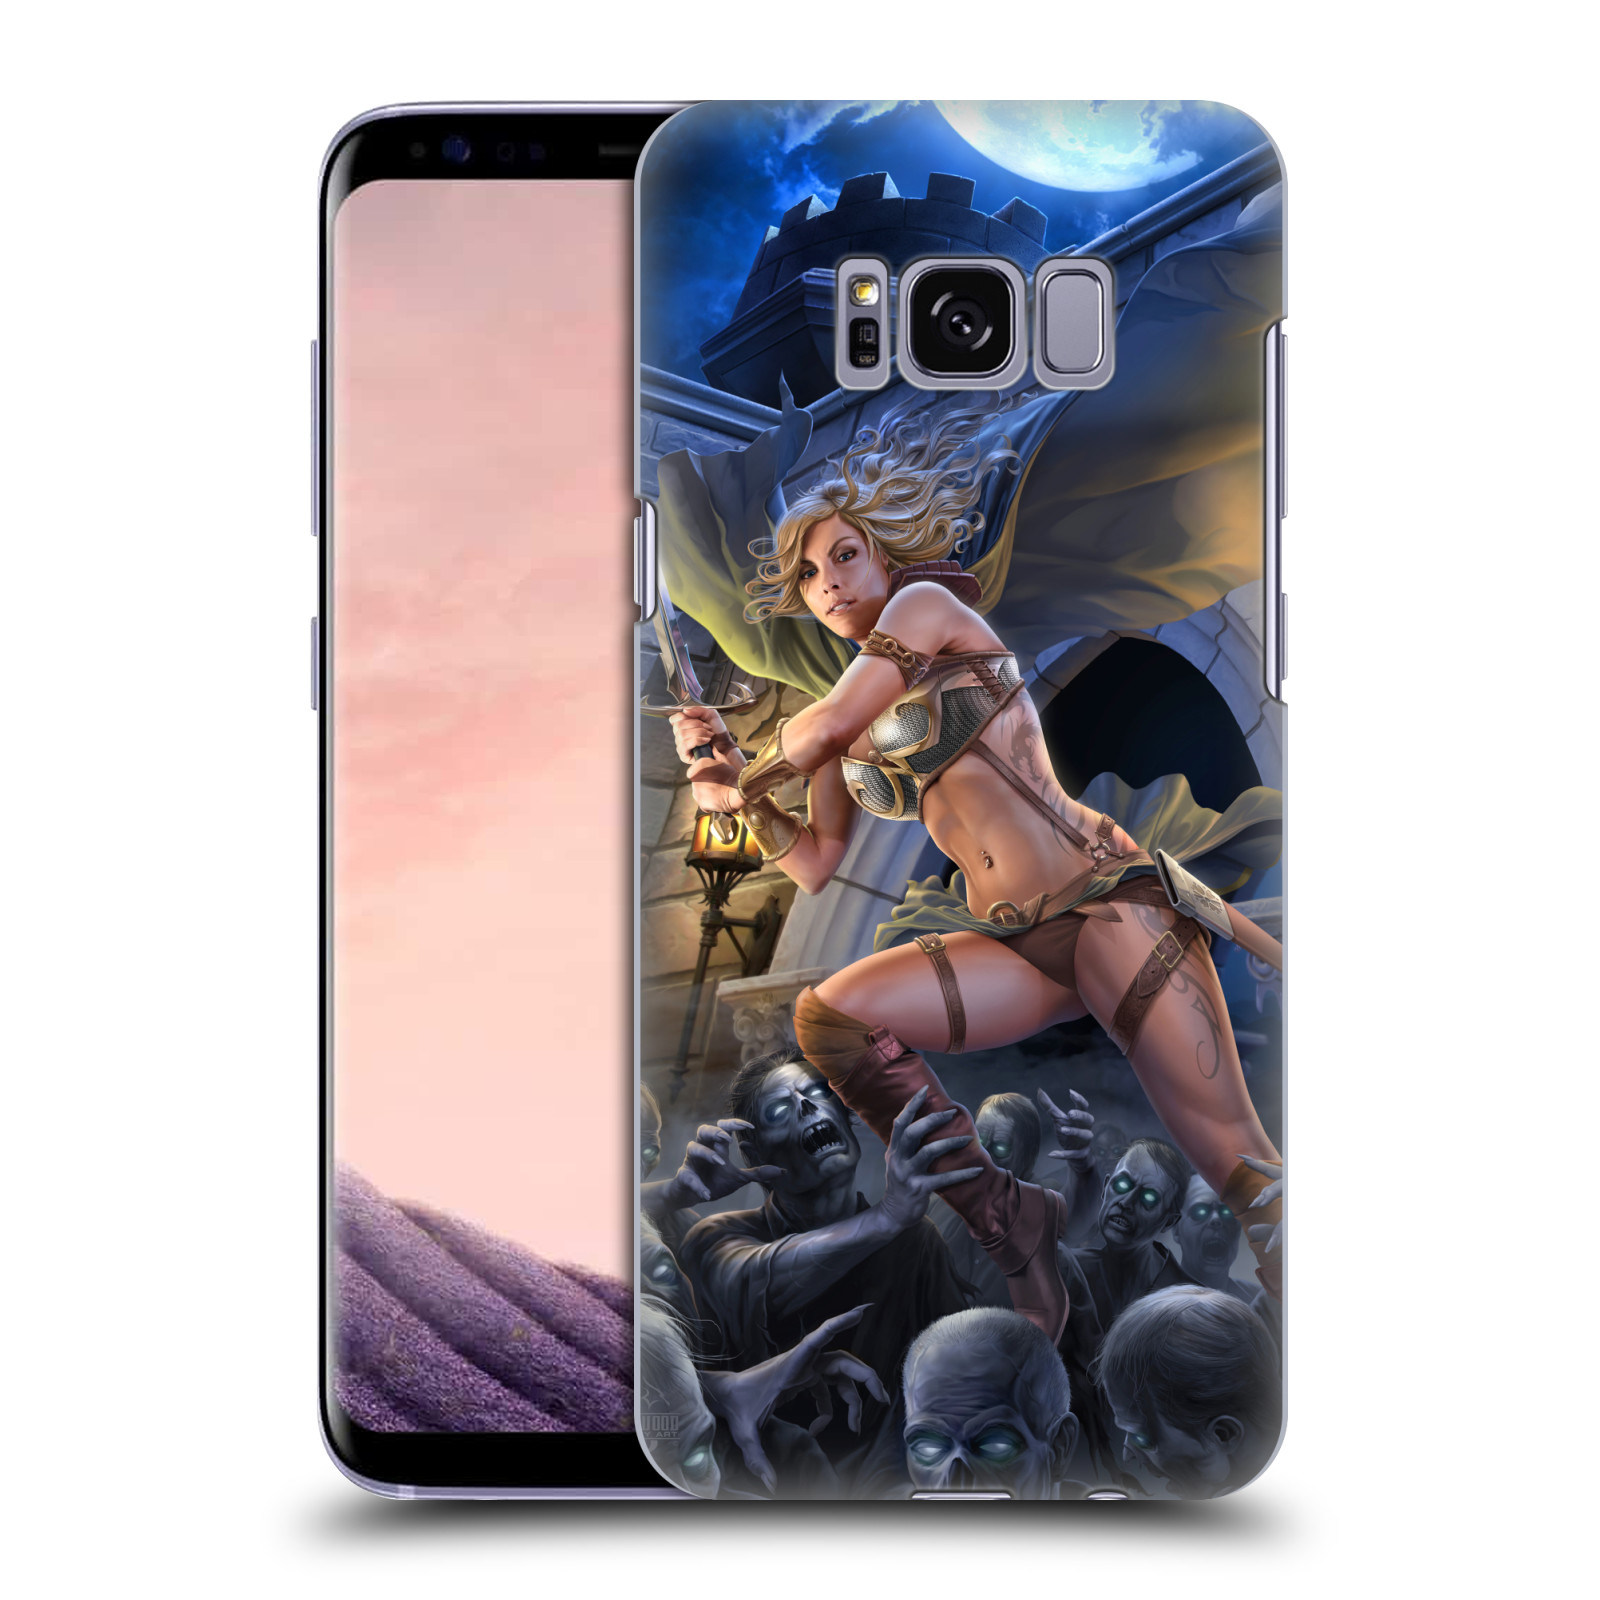 Pouzdro na mobil Samsung Galaxy S8 - HEAD CASE - Fantasy kresby Tom Wood - Princezna bojovnice a zombies